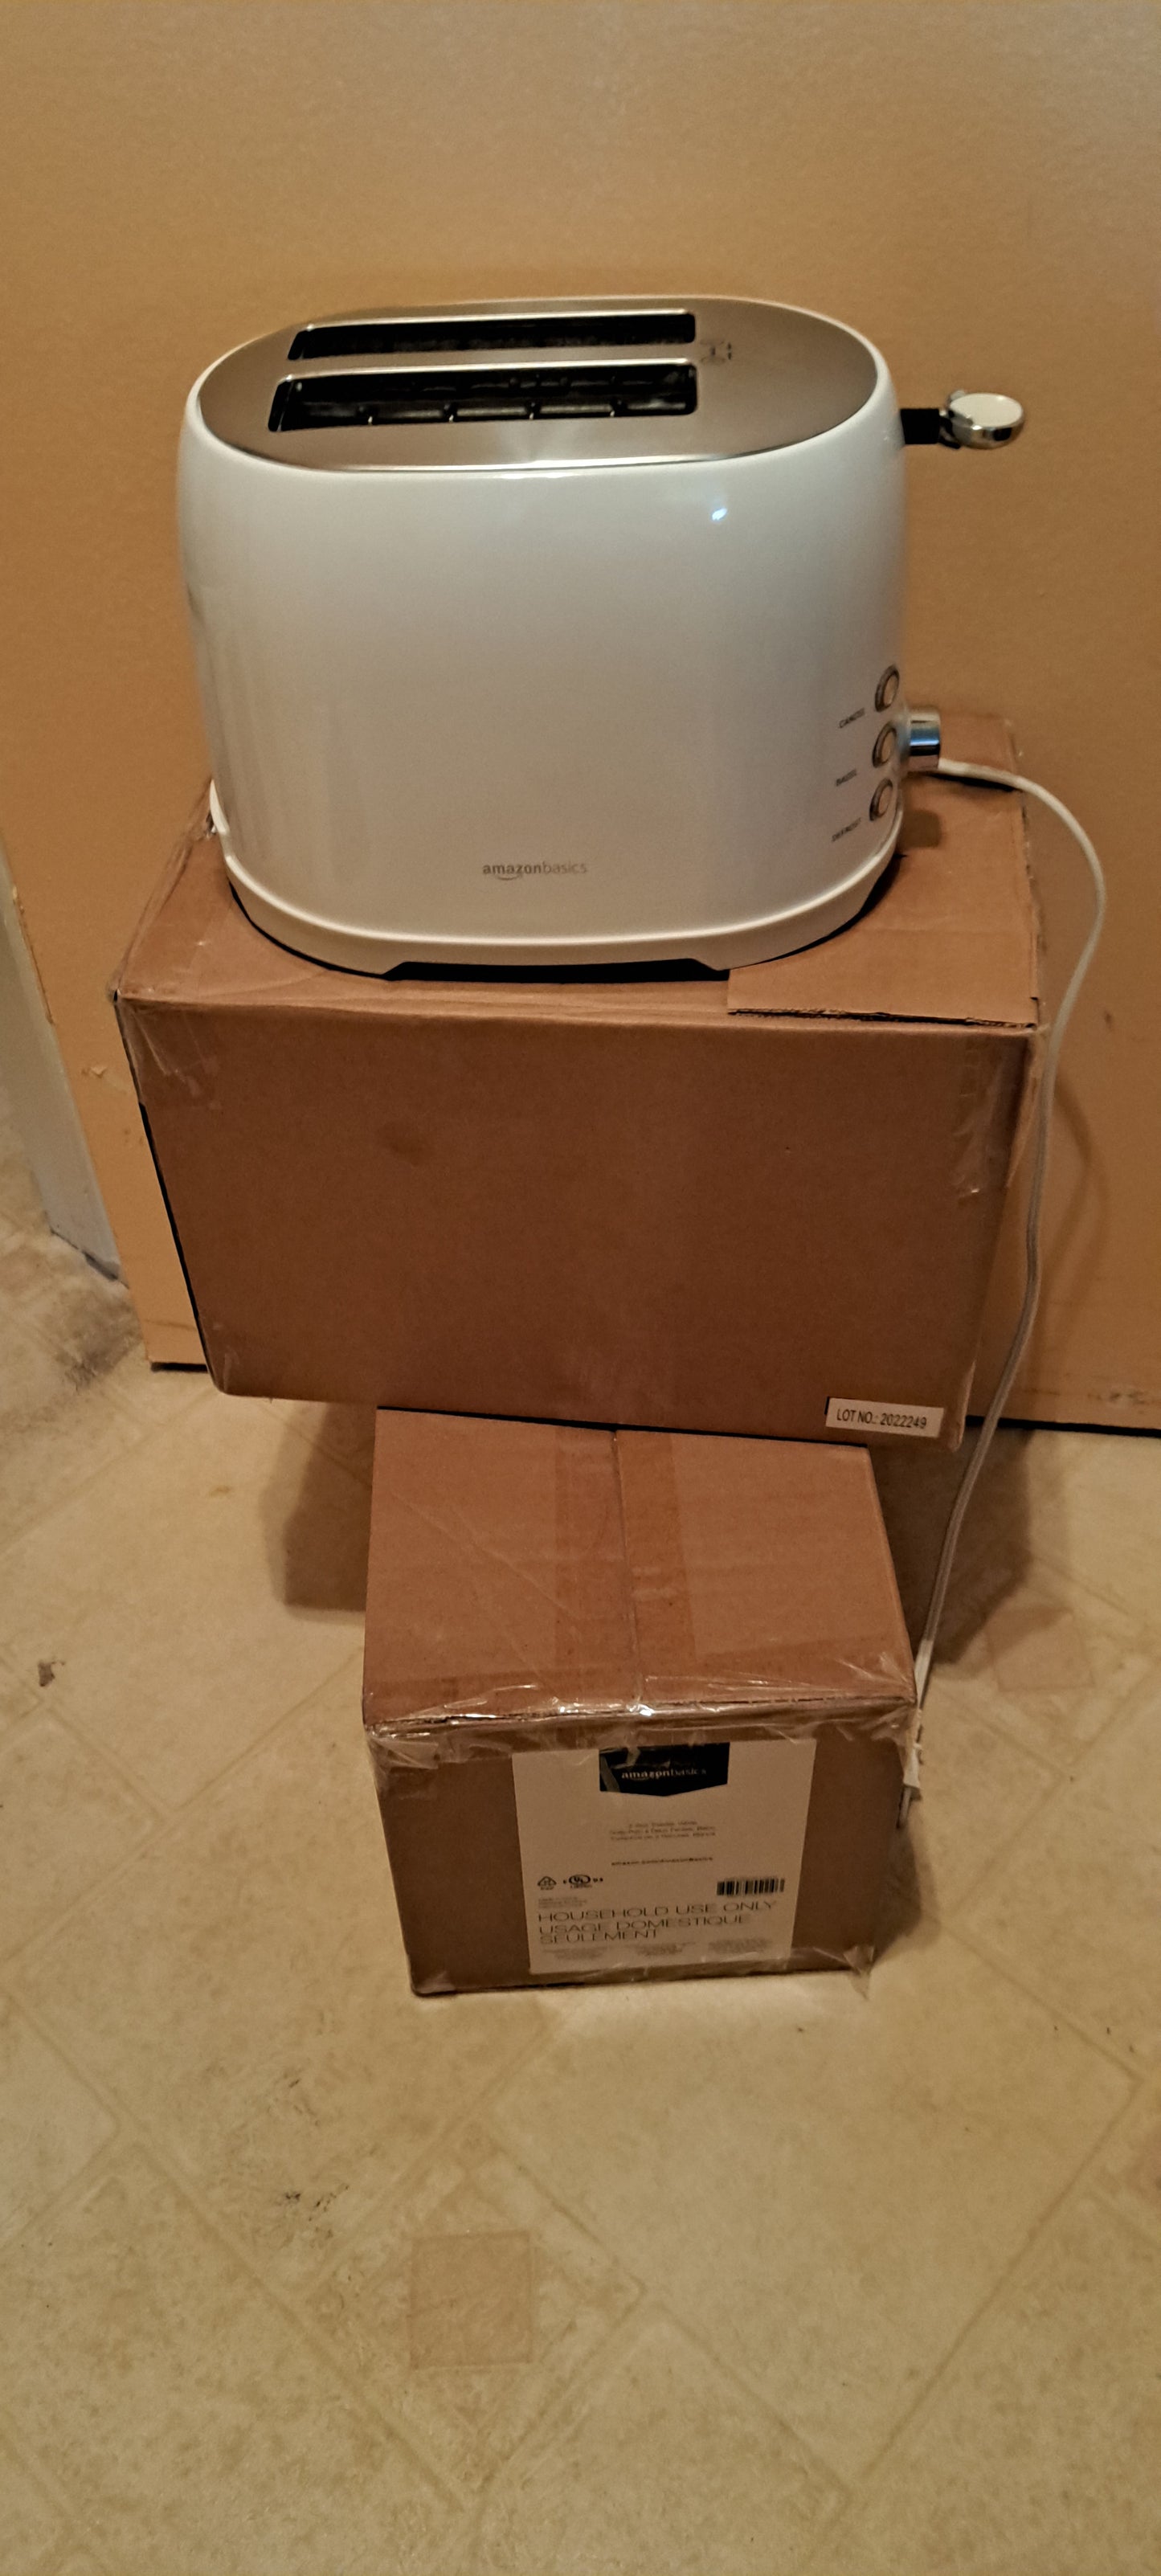 Amazon basic toaster